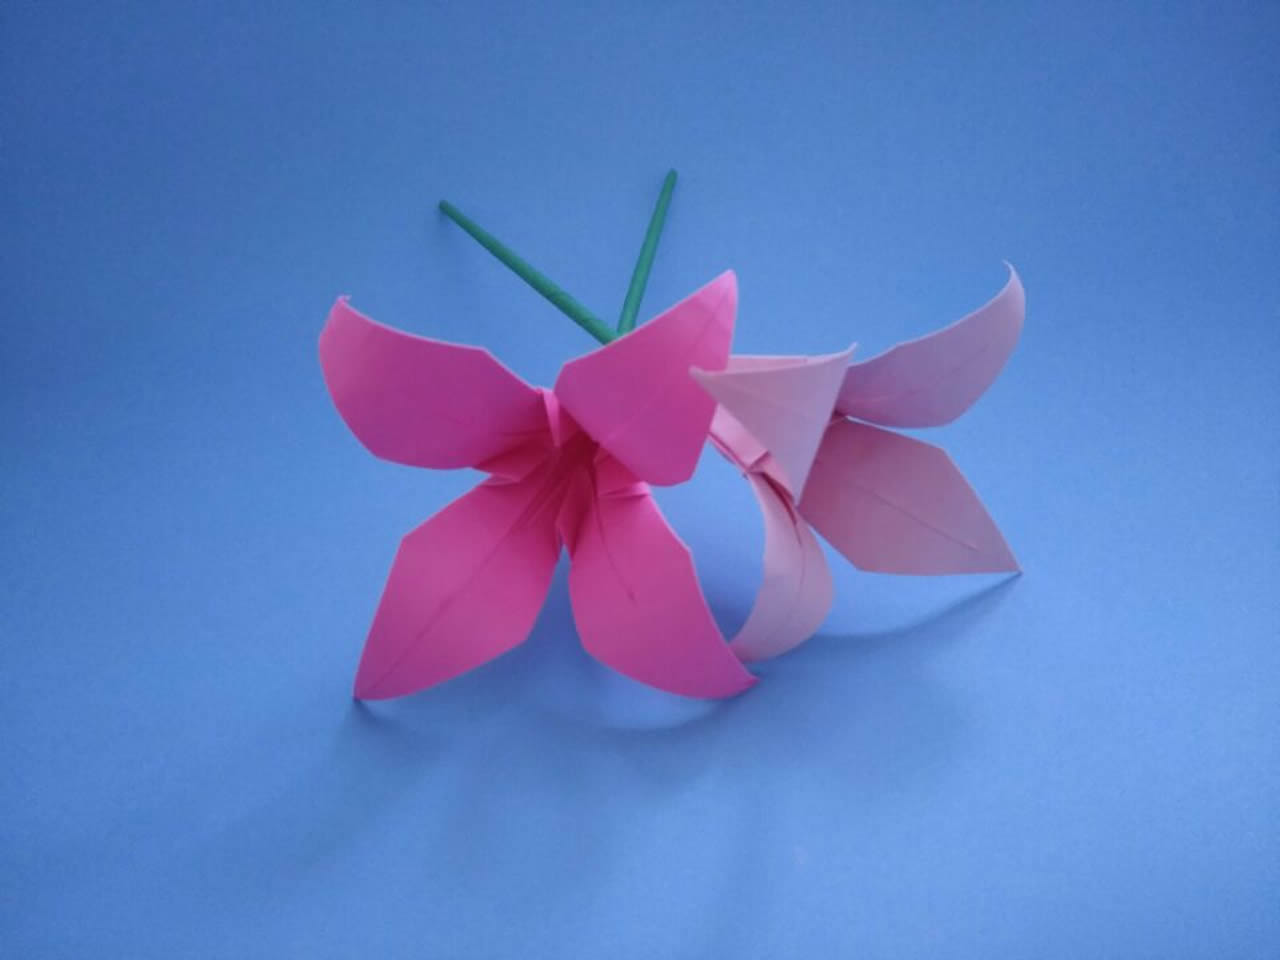 教你用纸折漂亮的花朵,制作起来非常简单,手残党也一学就会